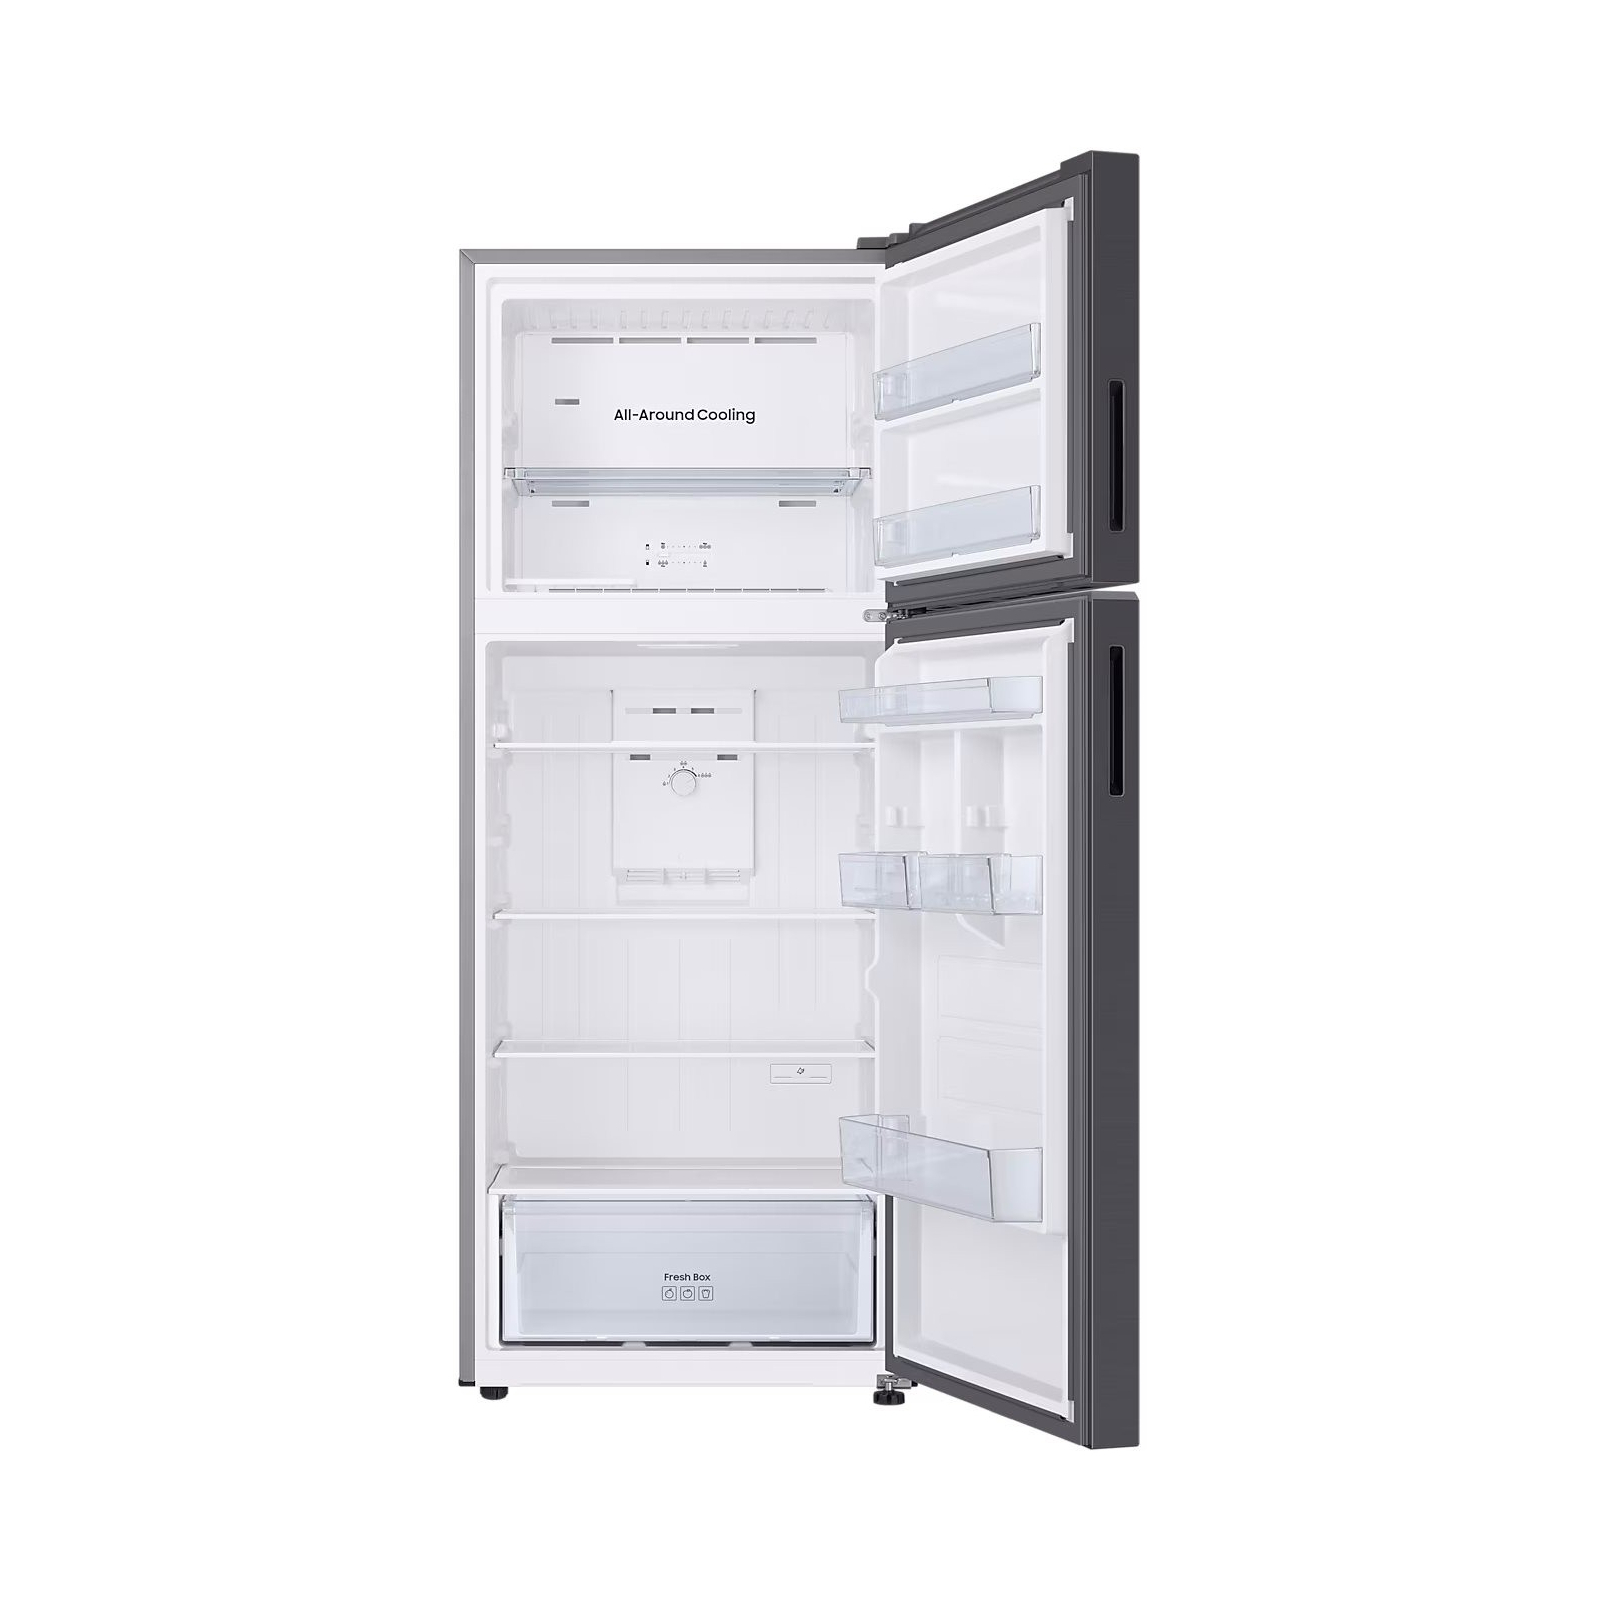 Холодильник Samsung RT42CG6000B1UA изображение 5